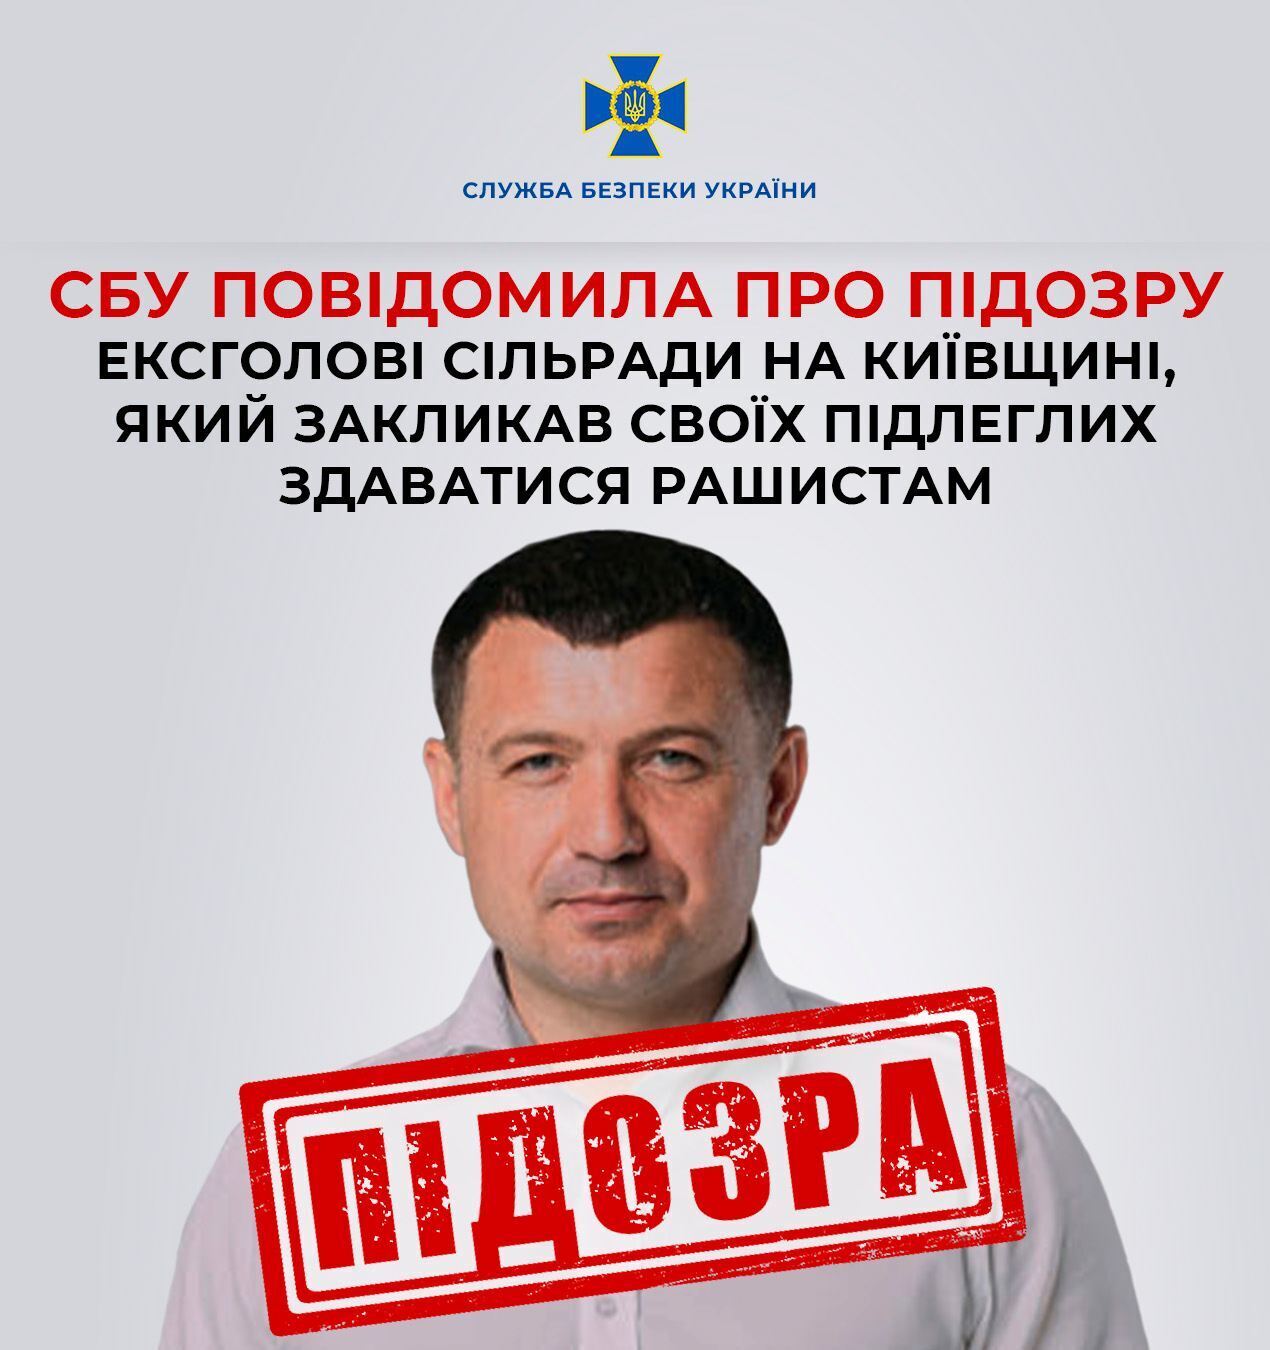 СБУ сообщила о подозрении экс-председателю сельсовета на Киевщине: призвал подчиненных сдаваться оккупантам. Фото и видео